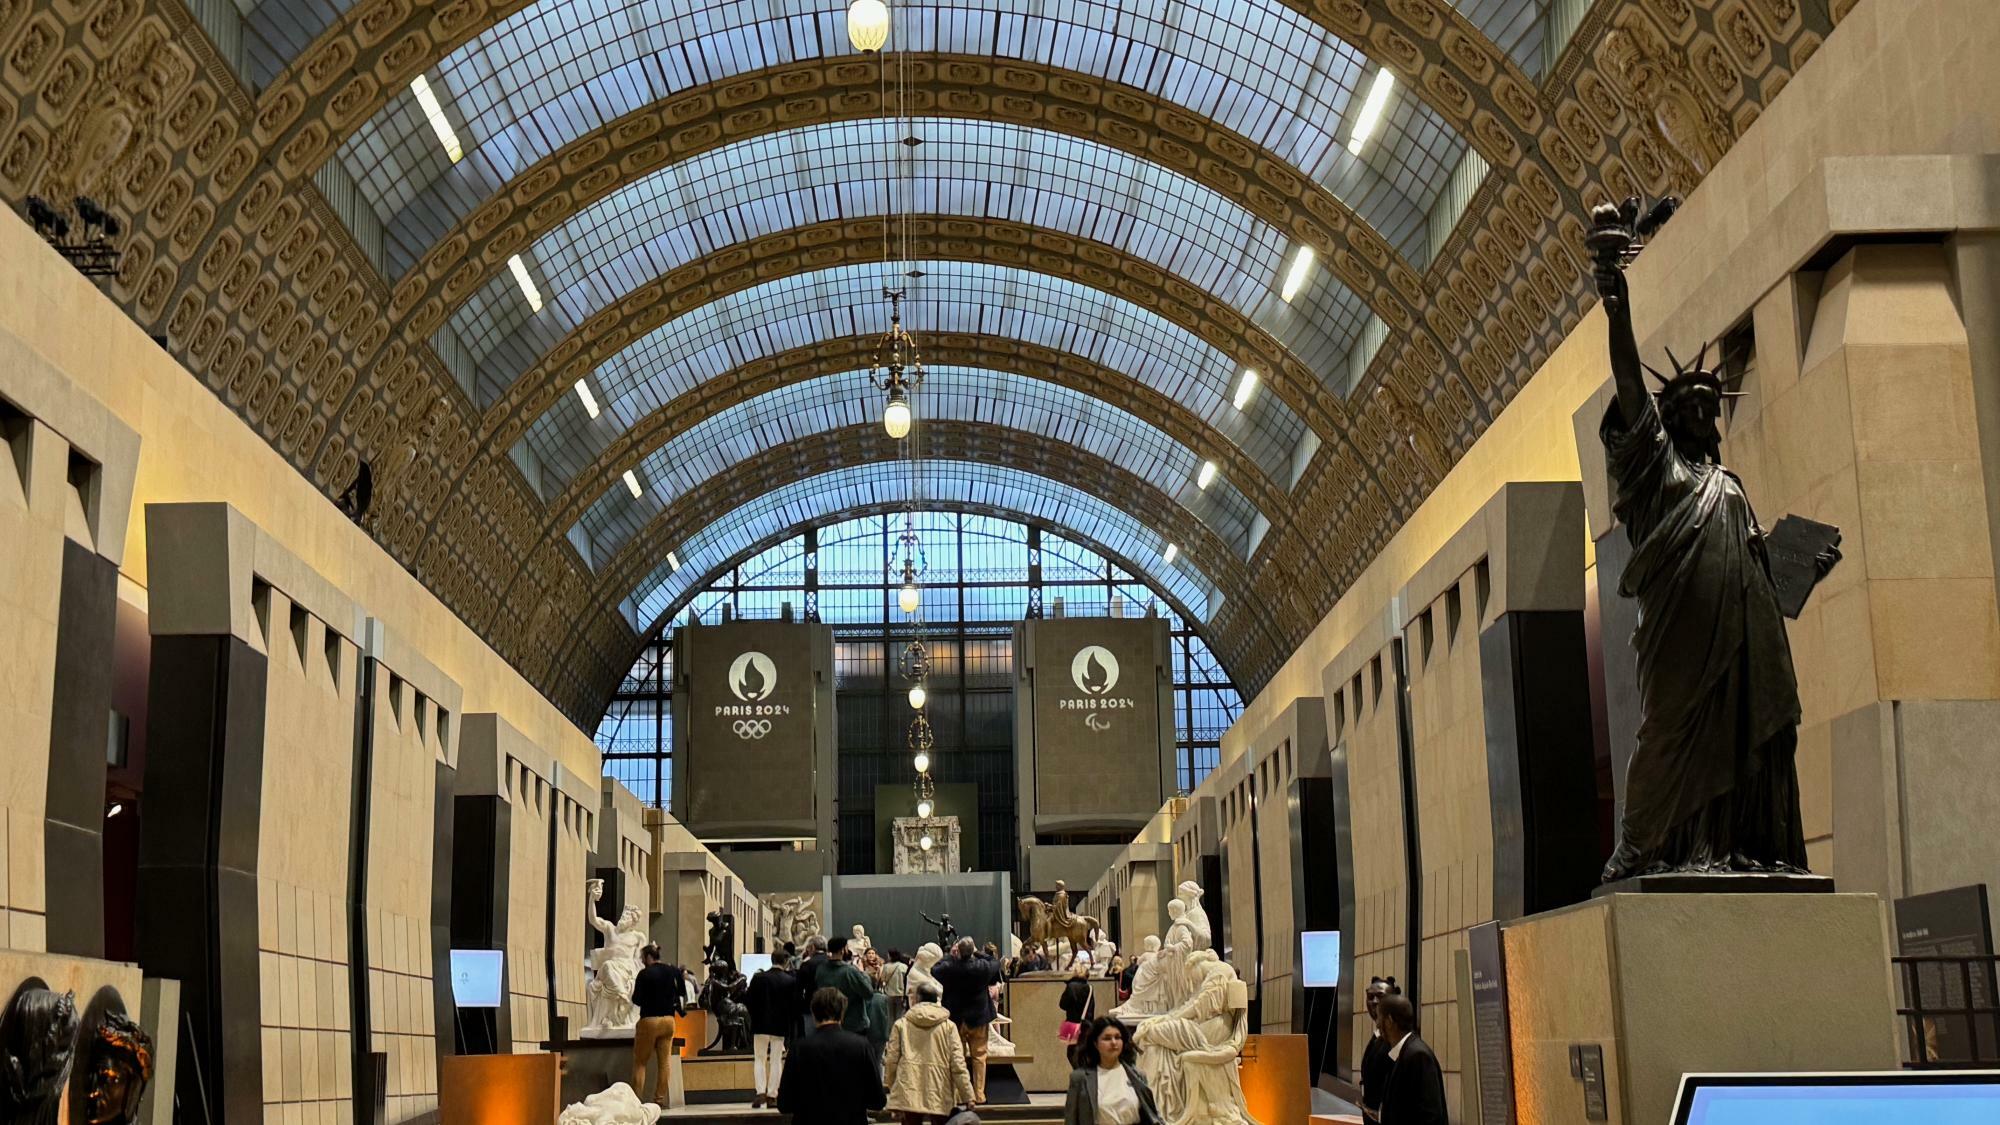 ポスター公開が行われたオルセー美術館。パリオリンピック、パラリンピックのロゴマークが入った垂れ幕が正面奥に据えられていた